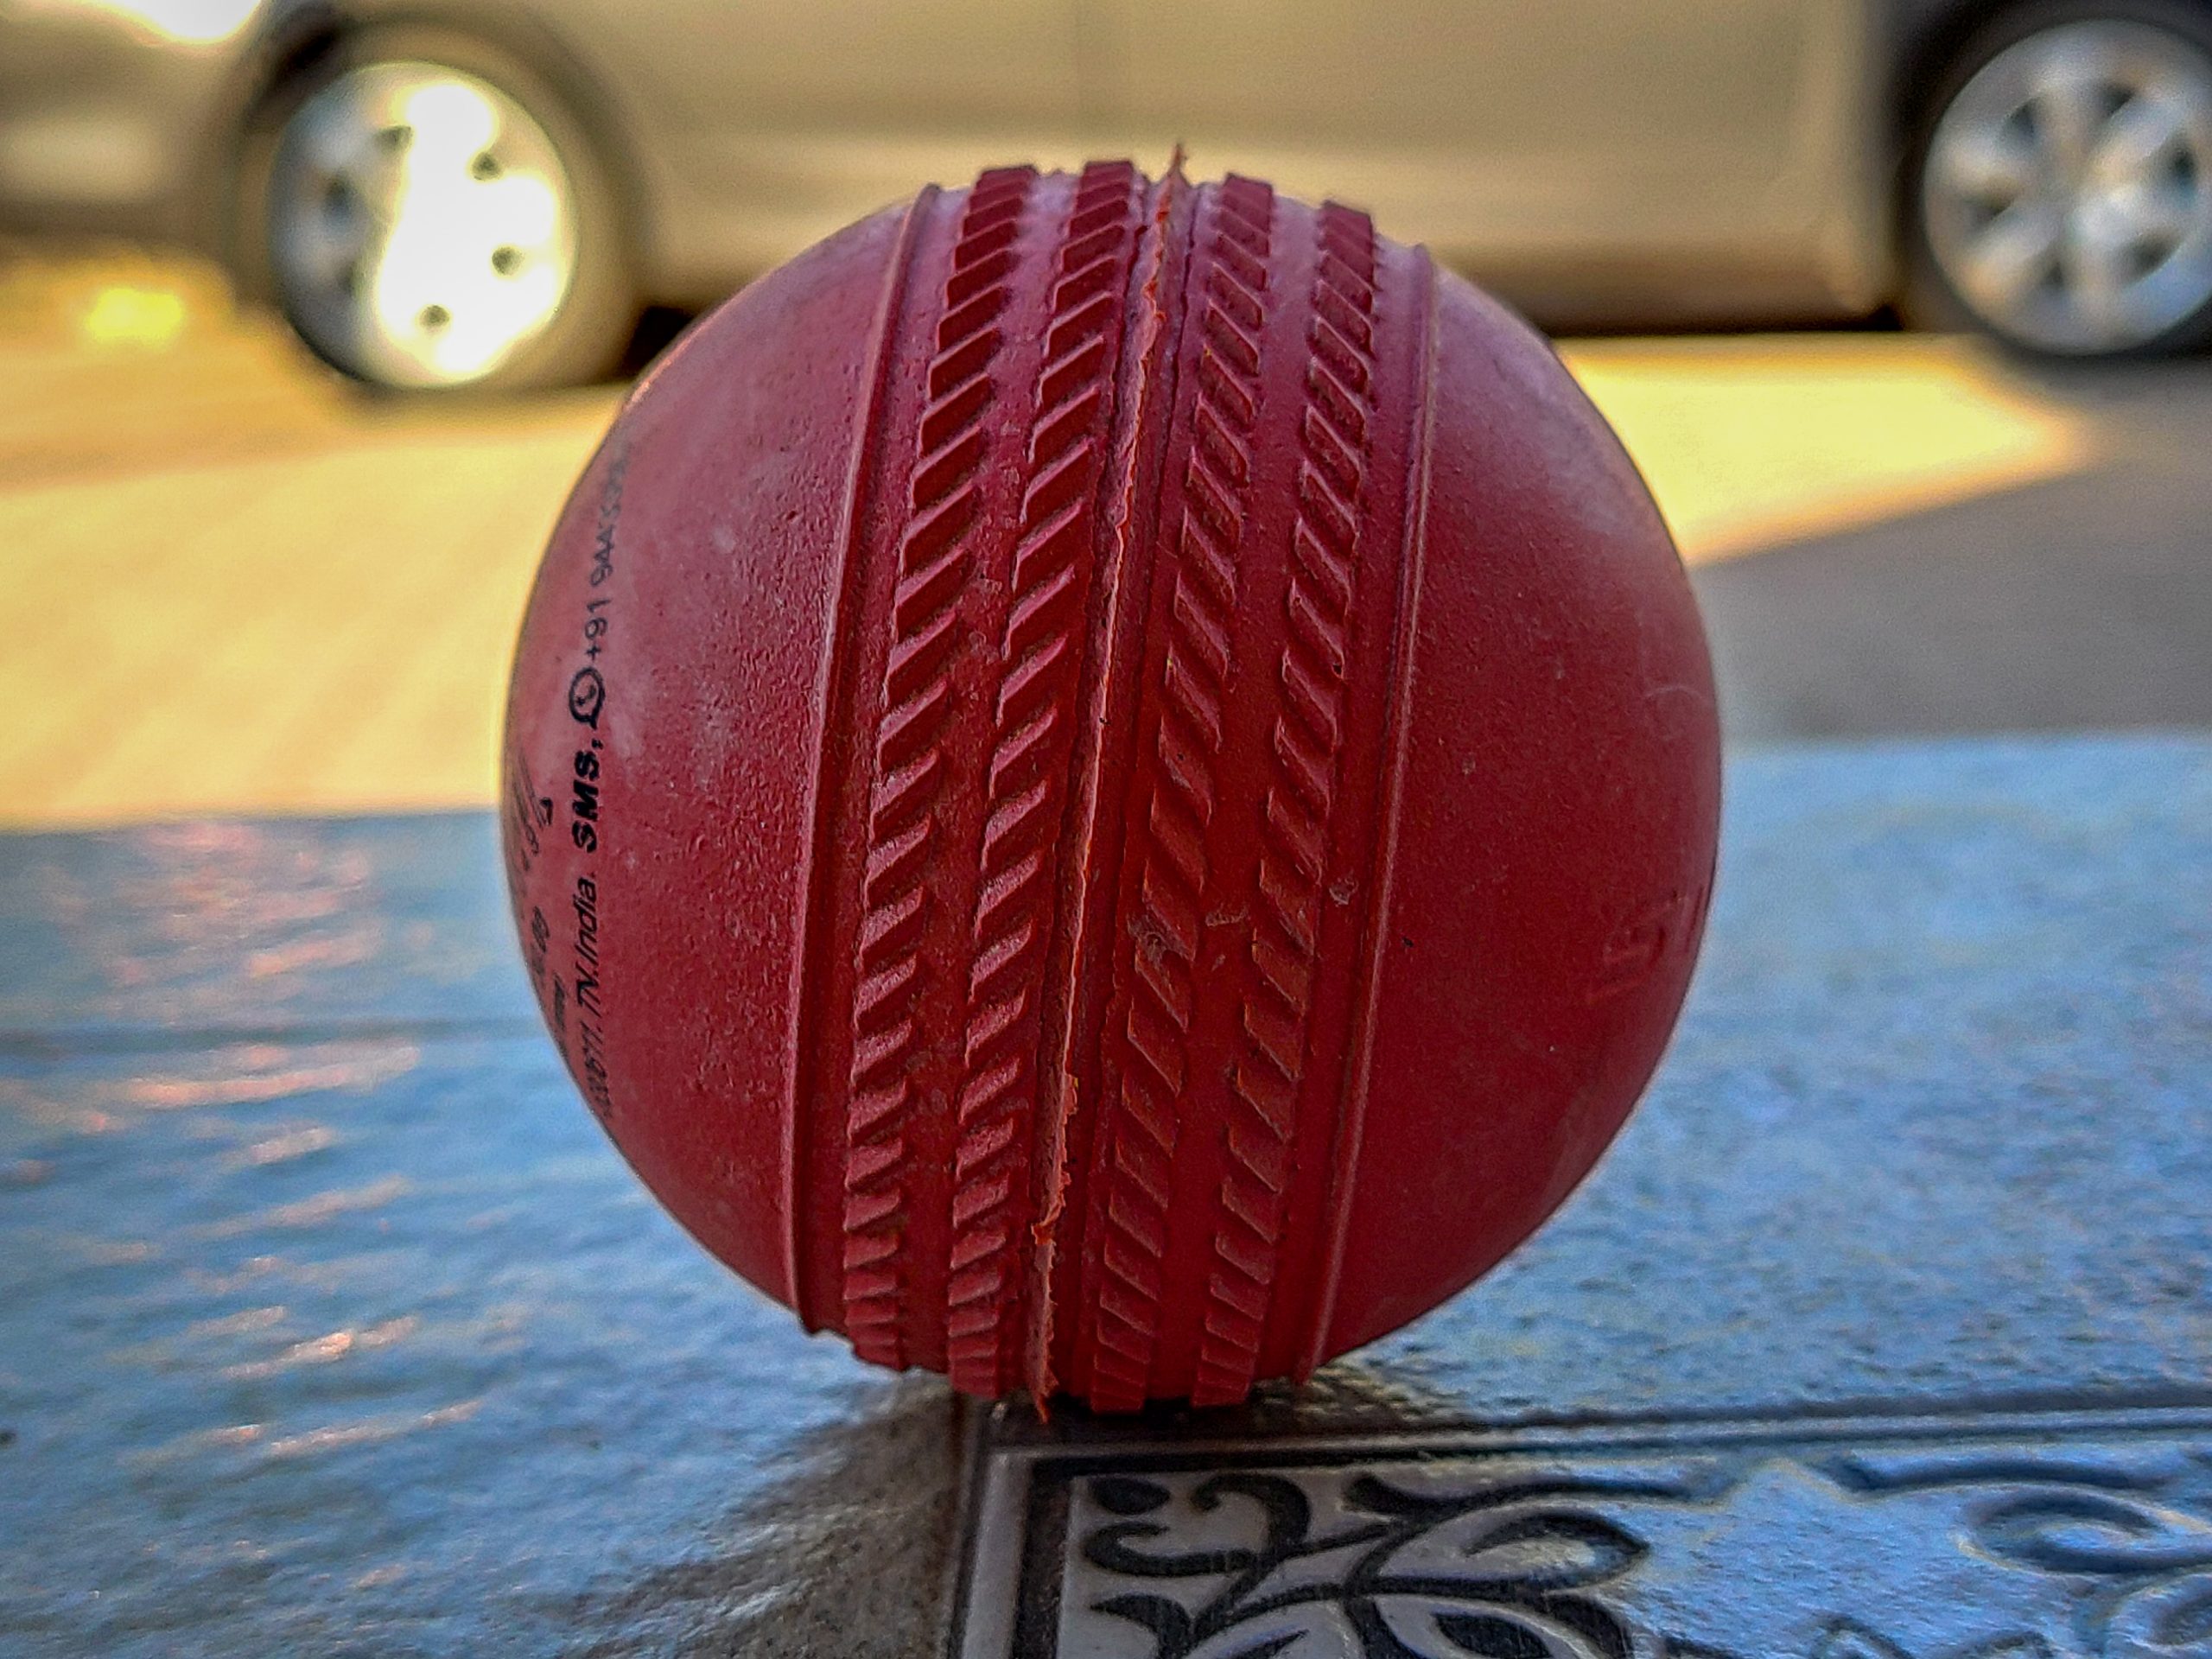 A cricket ball